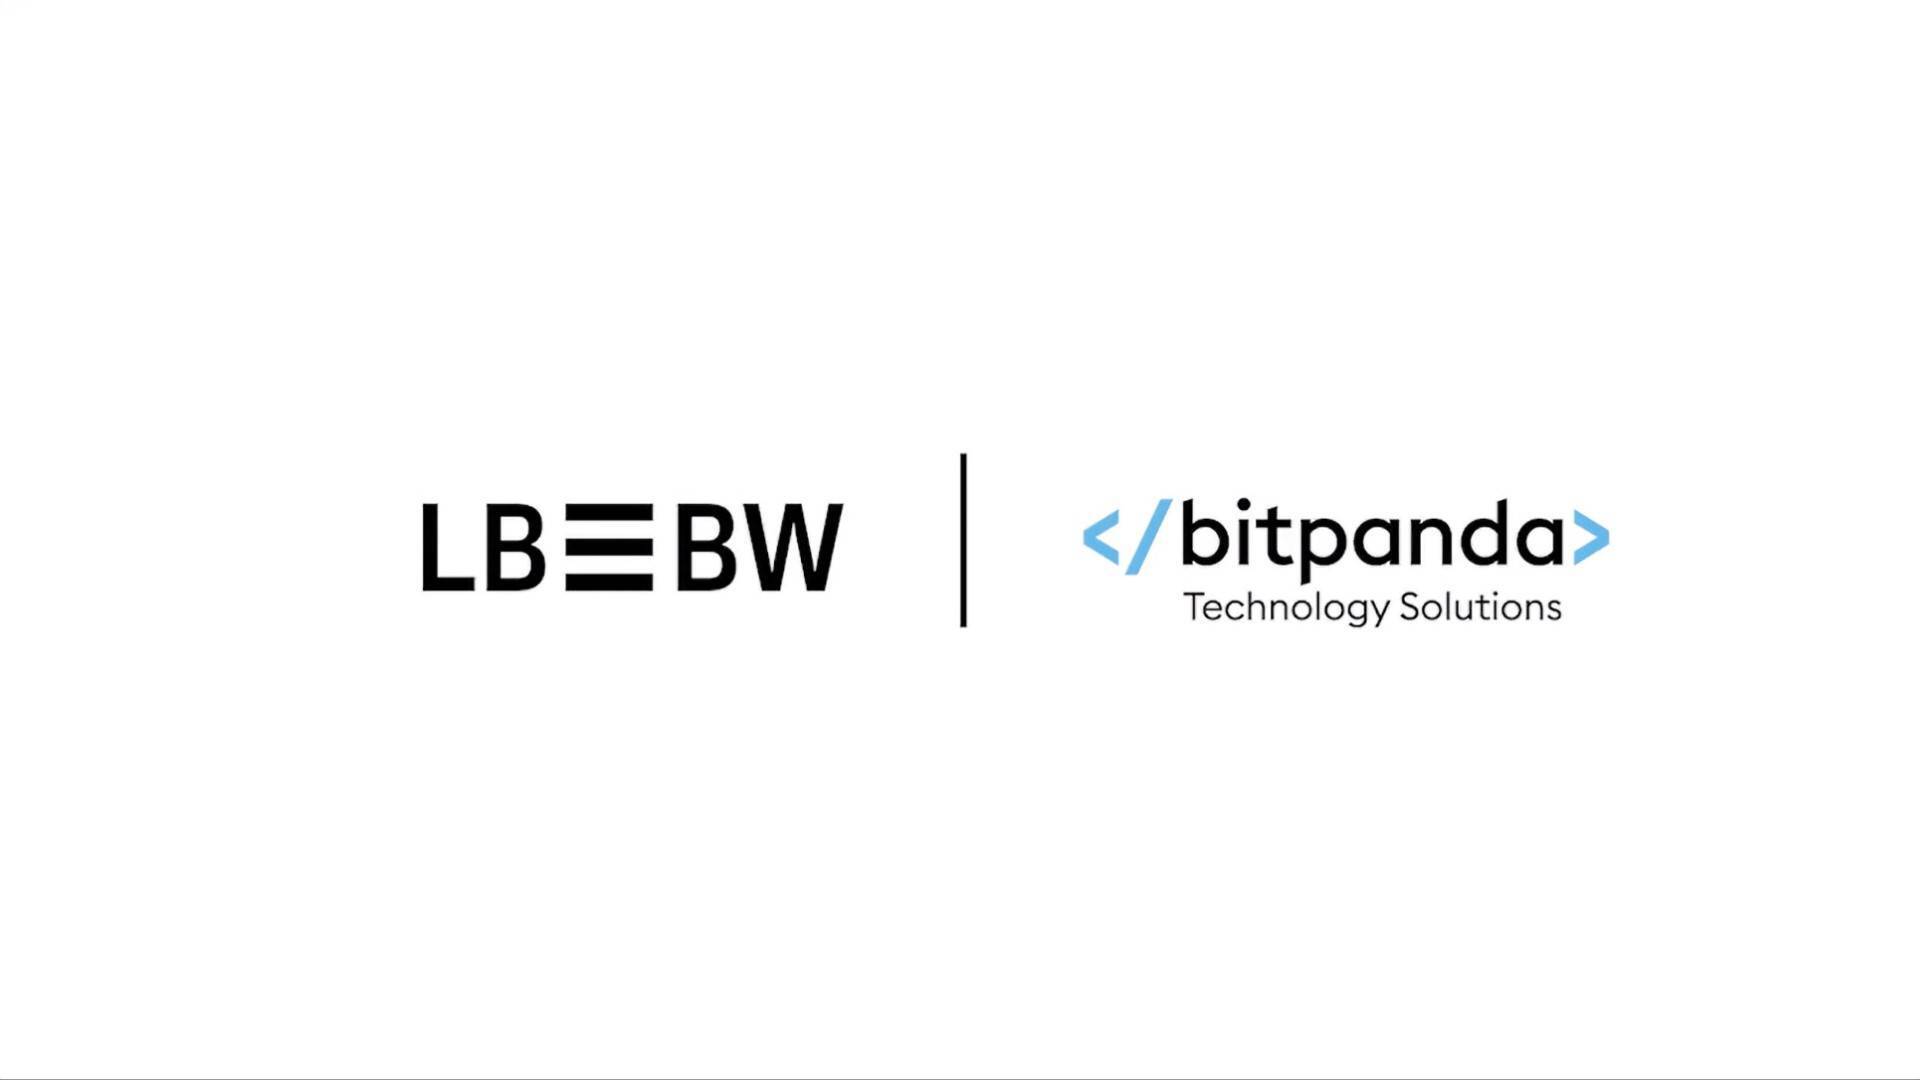 Ngân Hàng Lbbw Của Đức Hợp Tác Với Bitpanda Cung Cấp Dịch Vụ Lưu Ký Crypto